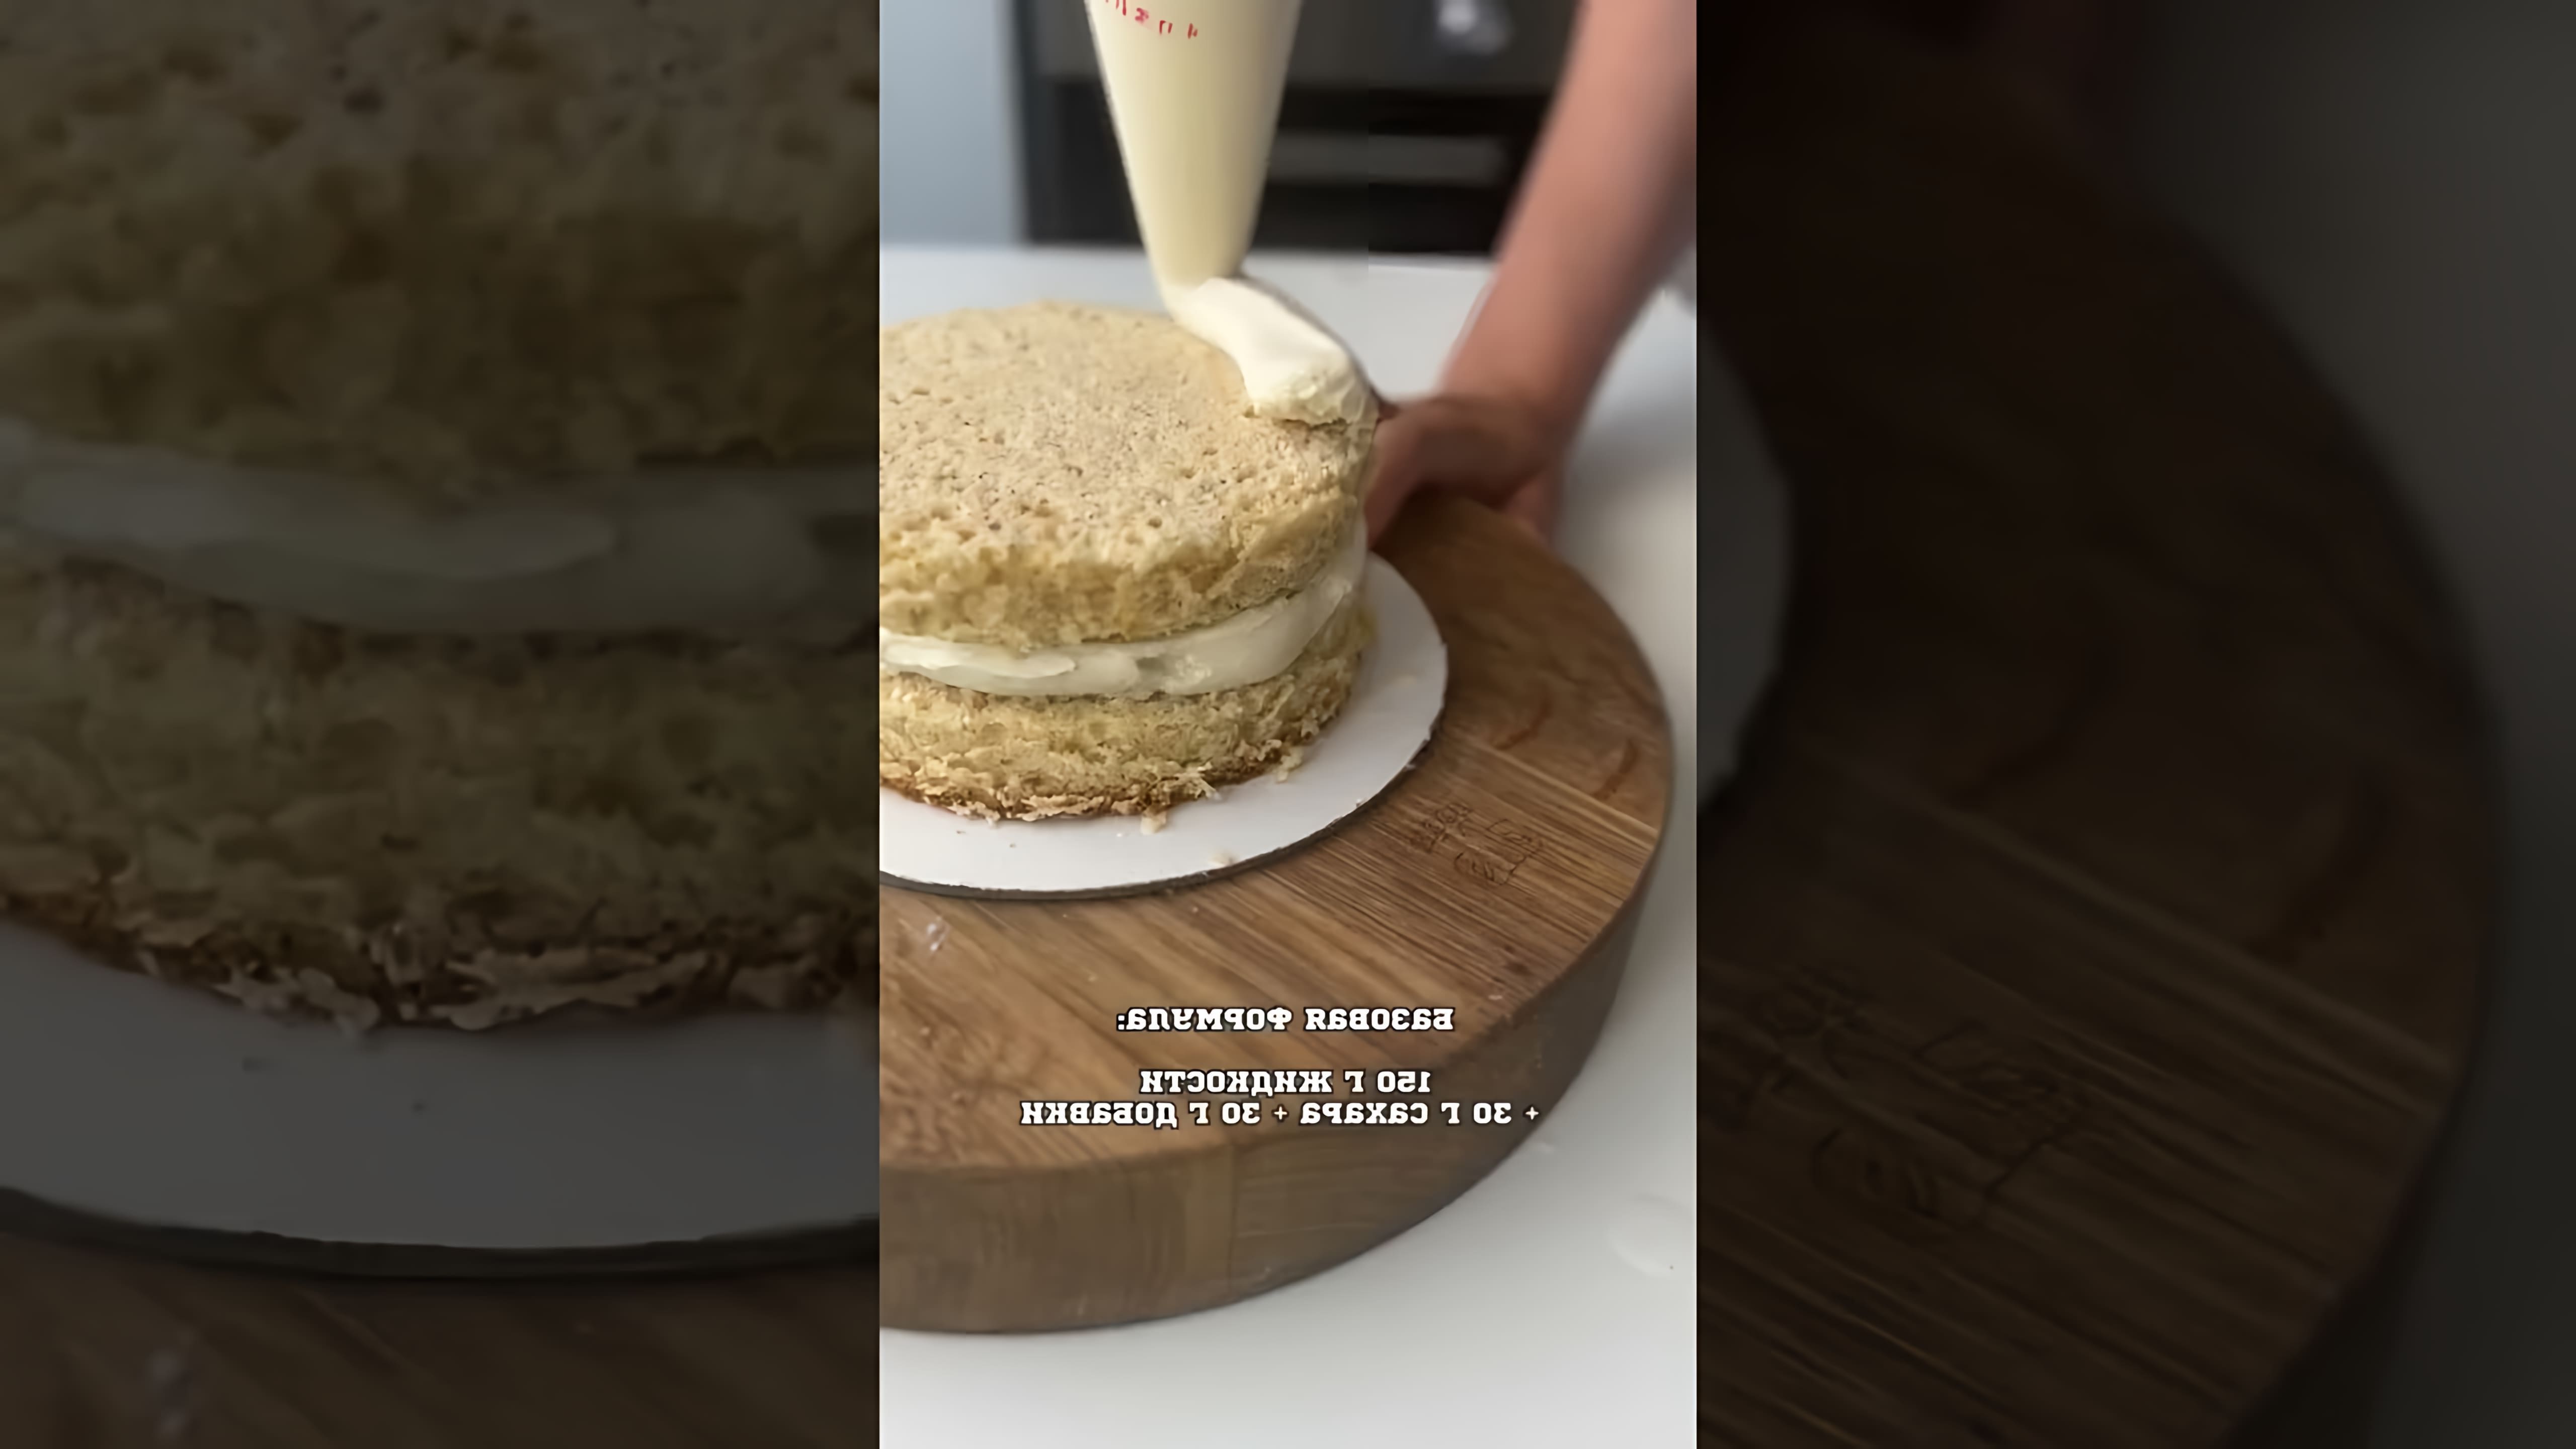 В этом видеоролике будут представлены 5 рецептов пропиток для торта, которые можно использовать для придания торту дополнительной мягкости и вкуса